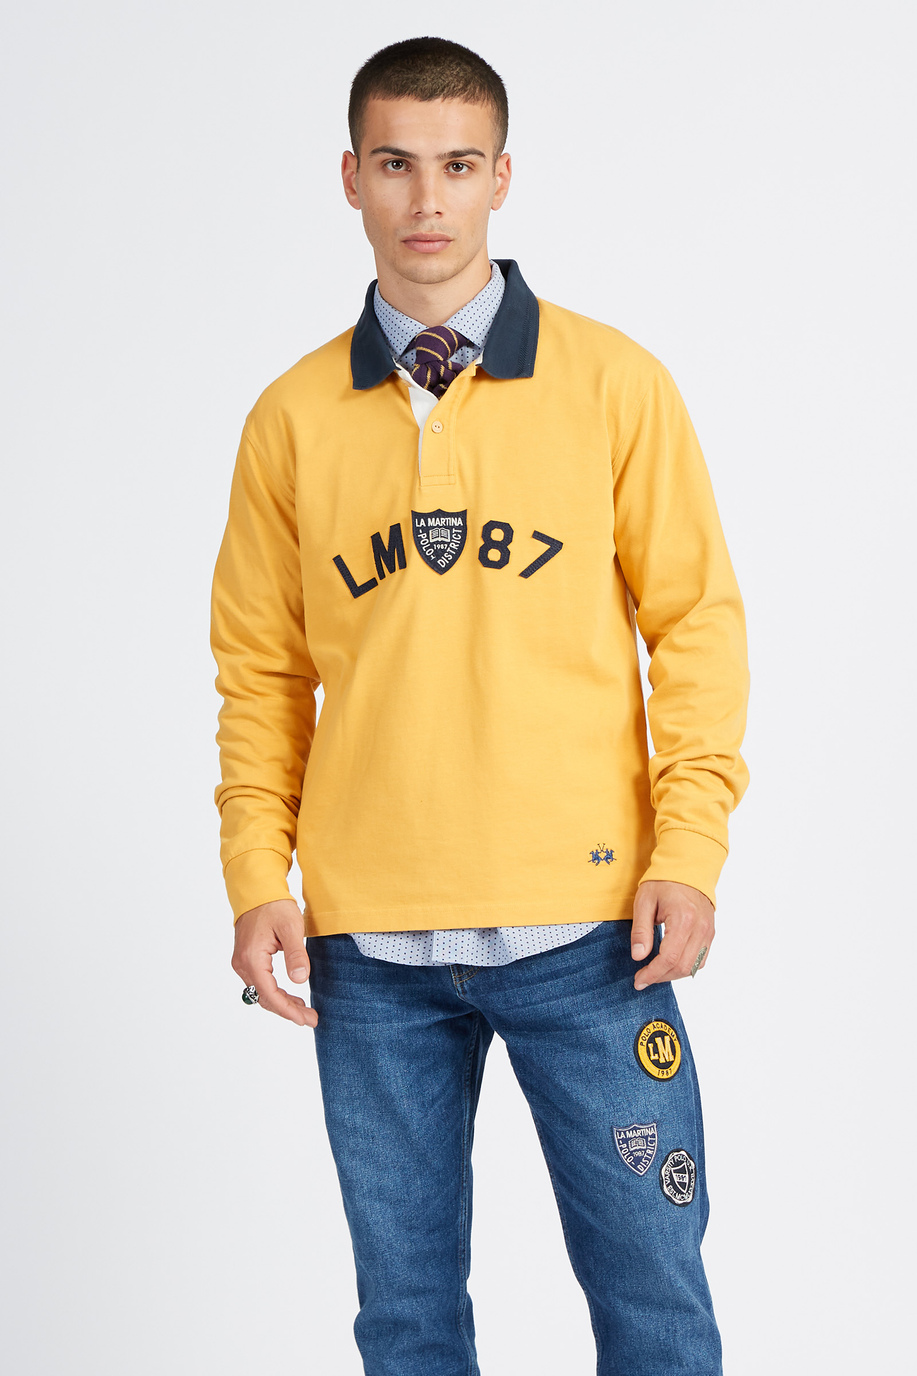 Polo Academy men's long-sleeved polo shirt with small contrasting collar logo - Vardis - Polo Academy | La Martina - Official Online Shop